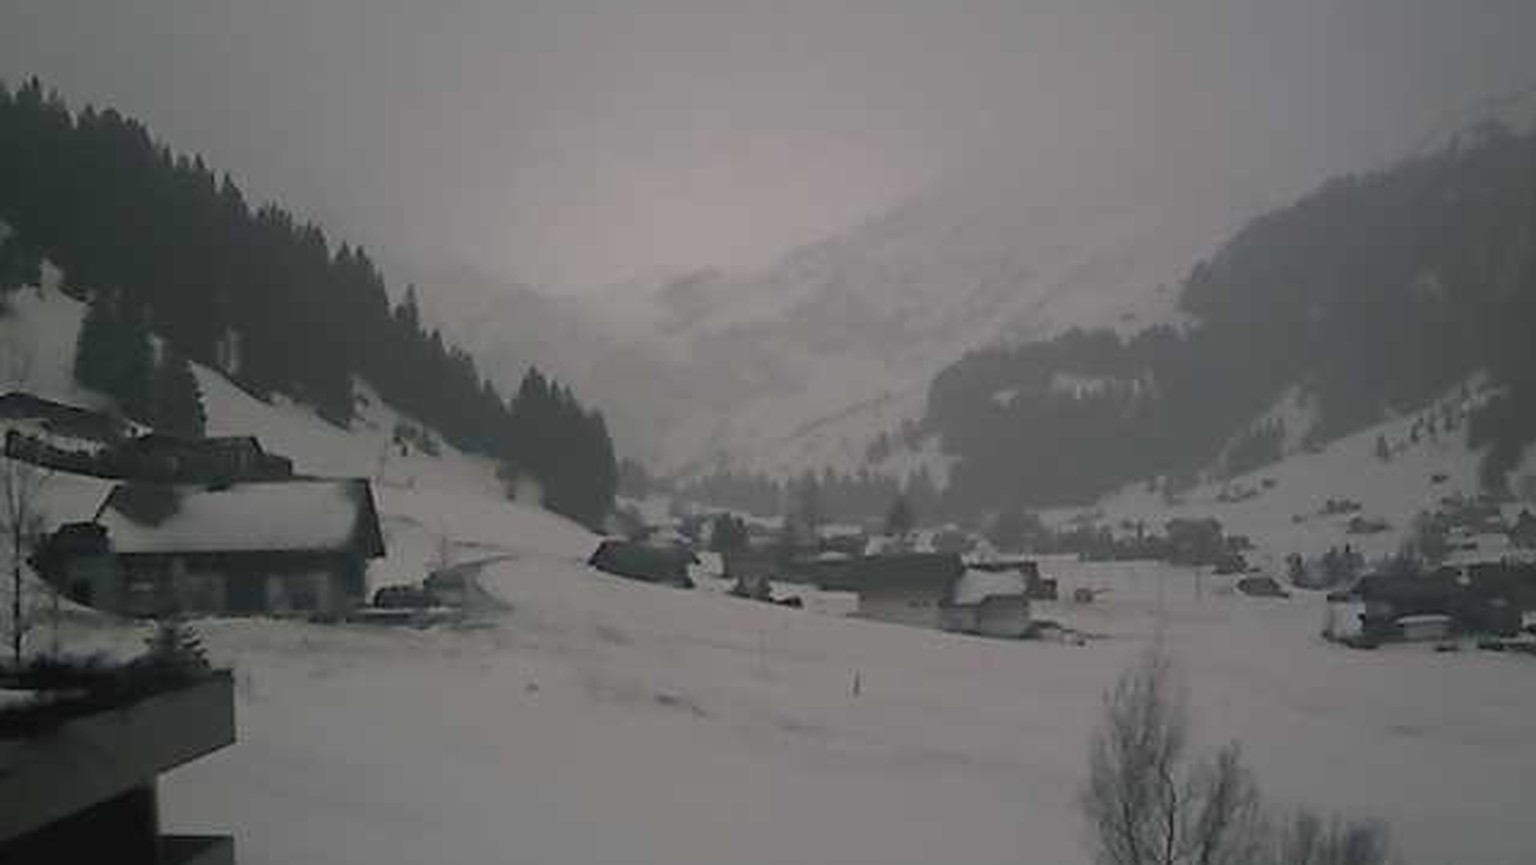 Gruusig, aber mit genügend Schnee: Adelboden heute Morgen.